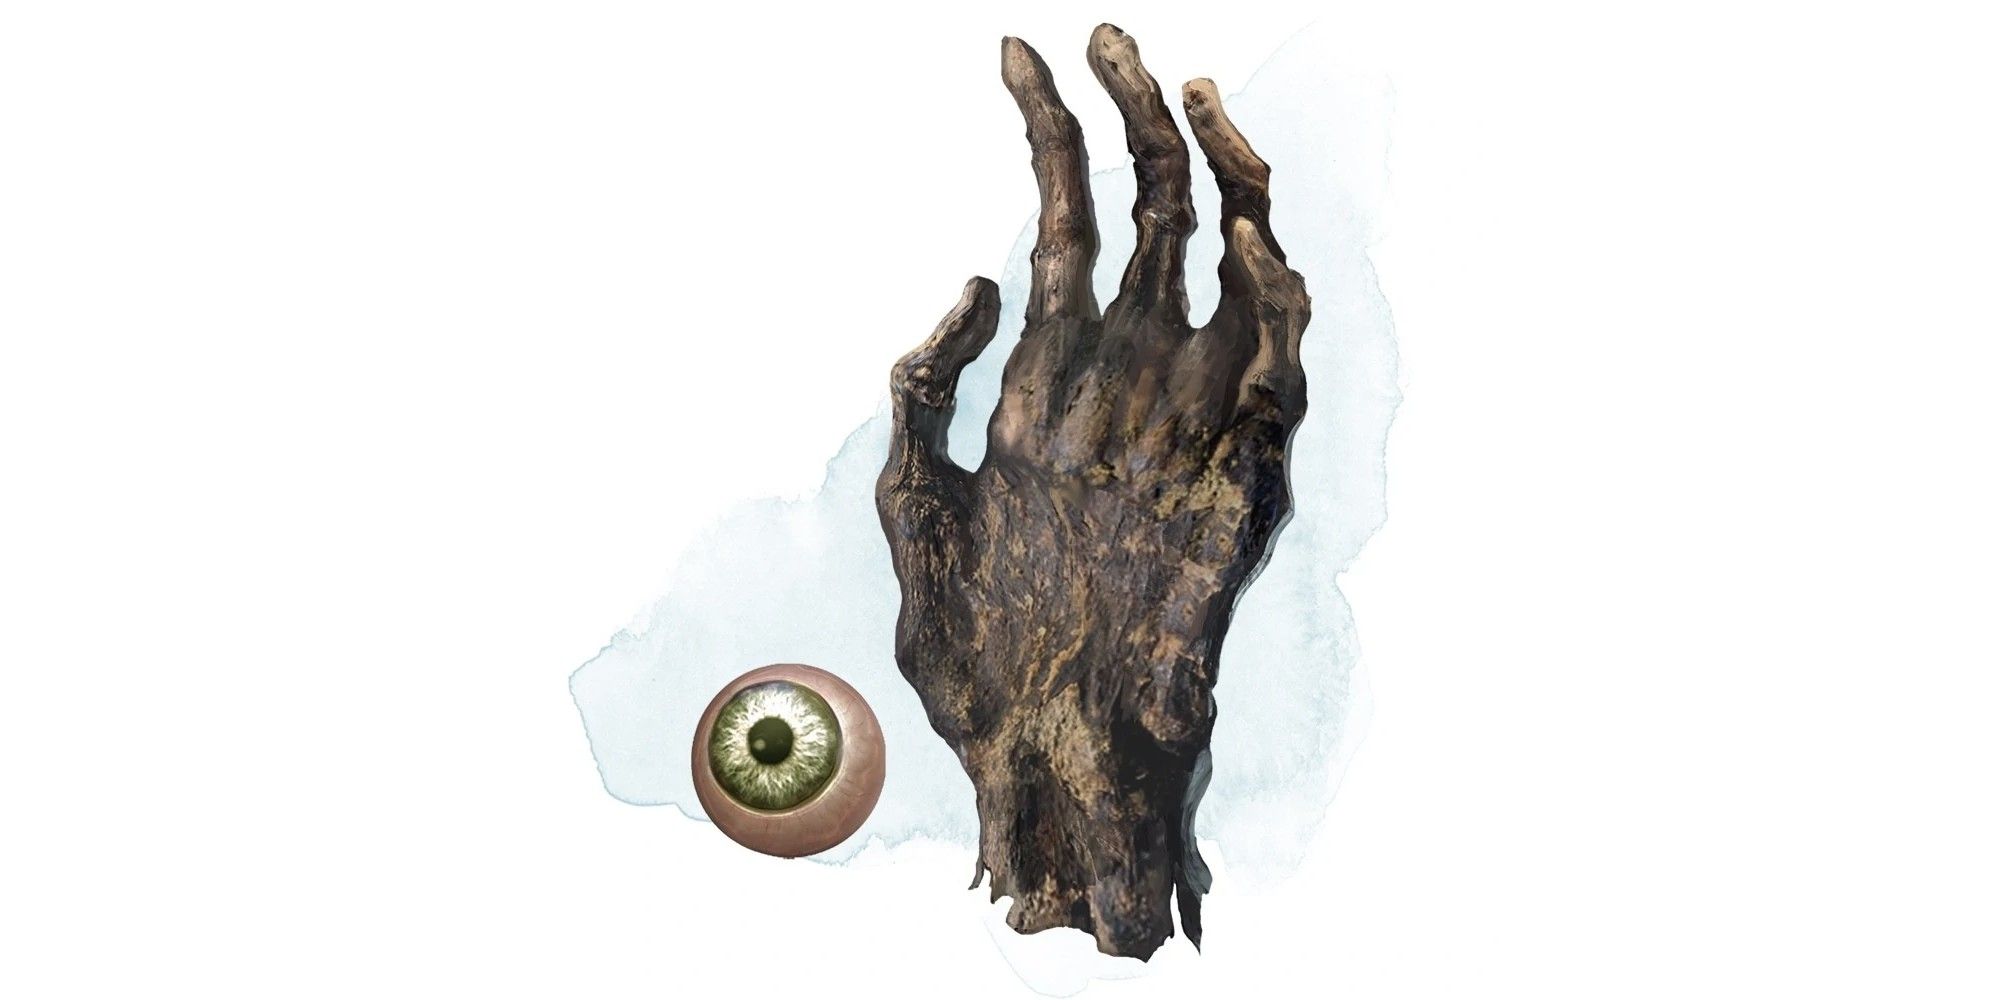 D&D Mão e Olho de Vecna, o olho tem verde ao redor da pupila, a mão é incrivelmente enrugada.